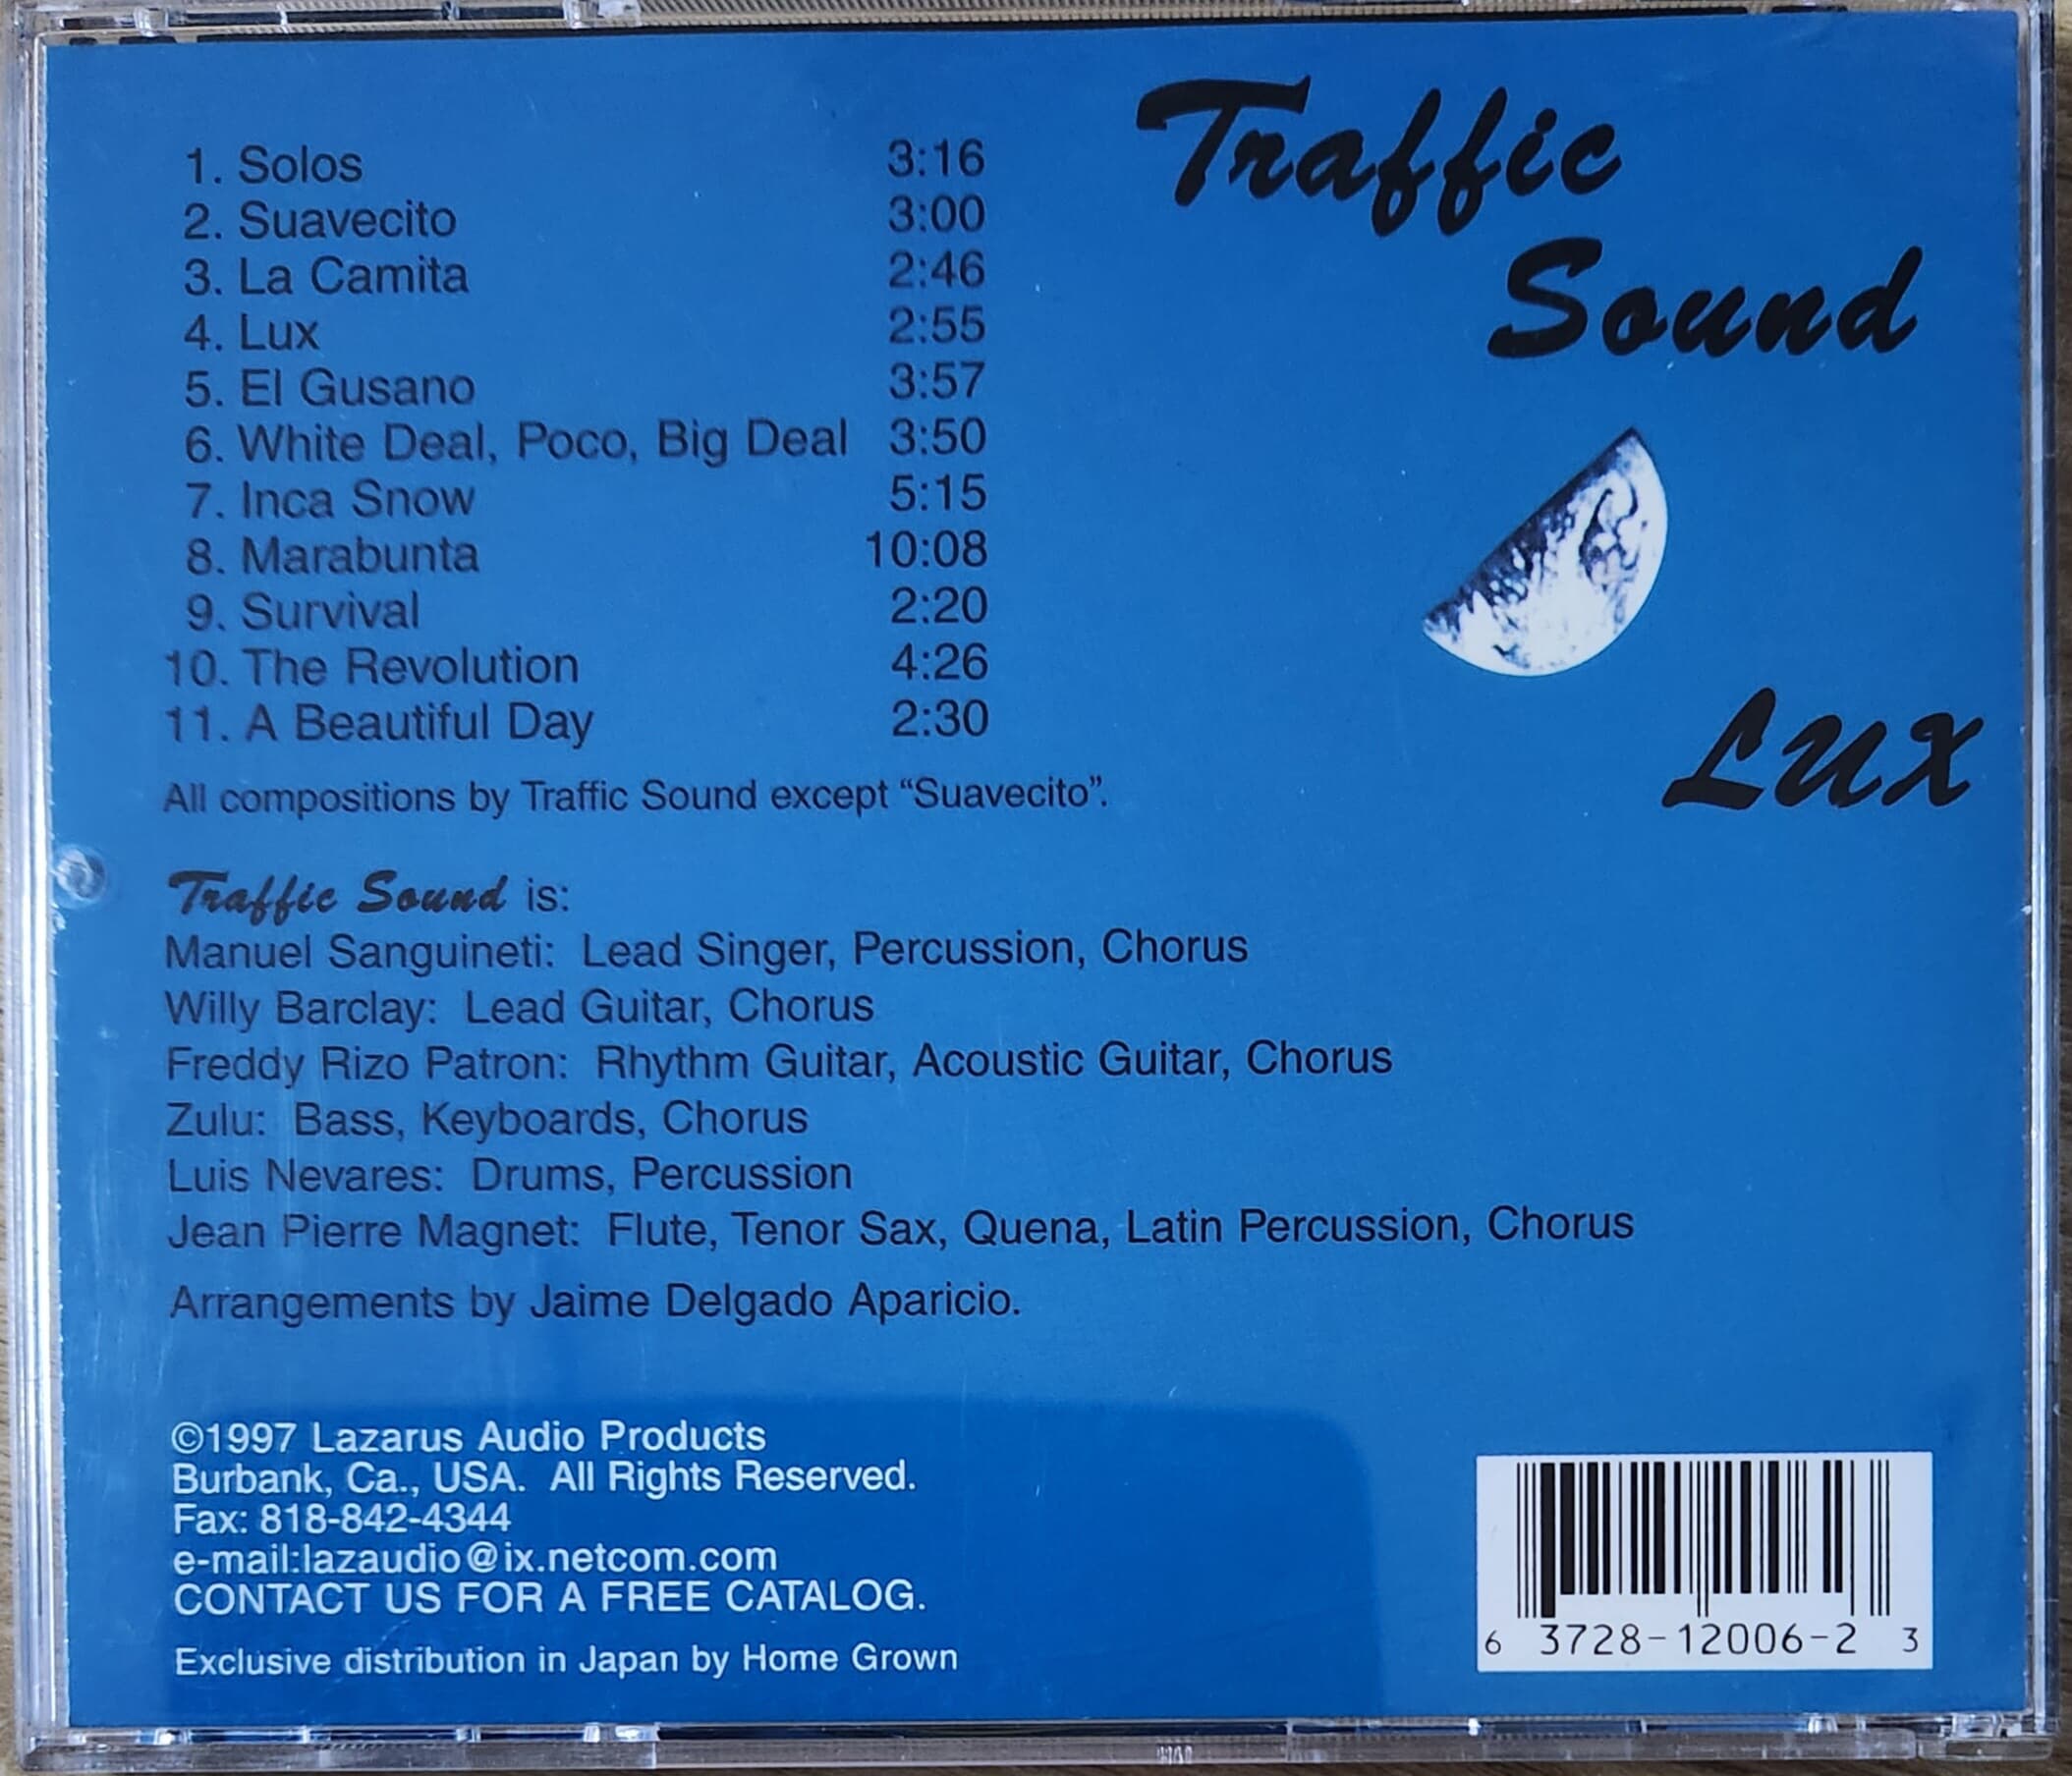 Traffic Sound /Lux